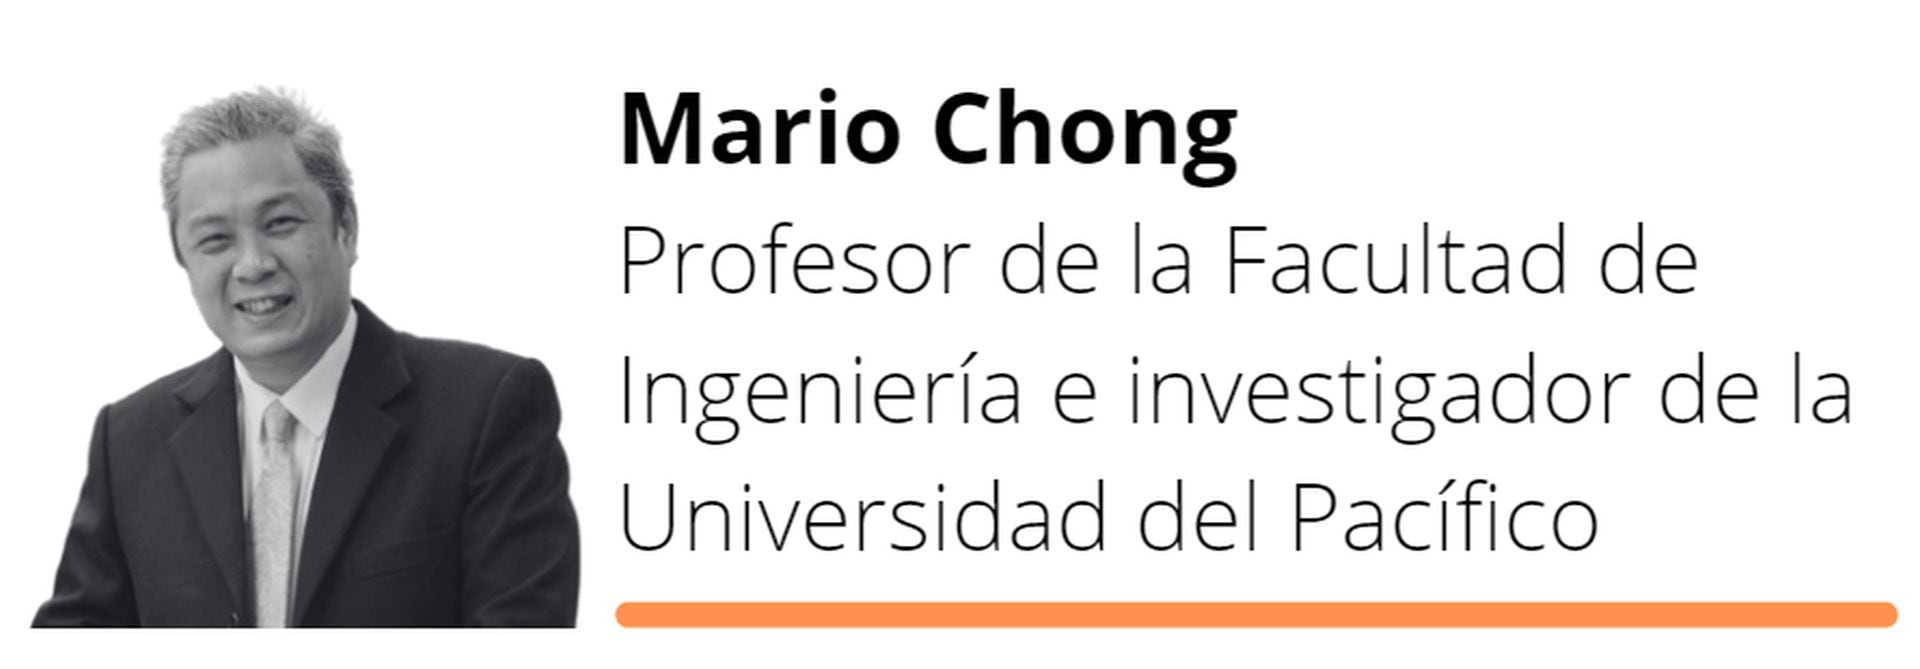 Mario Chong